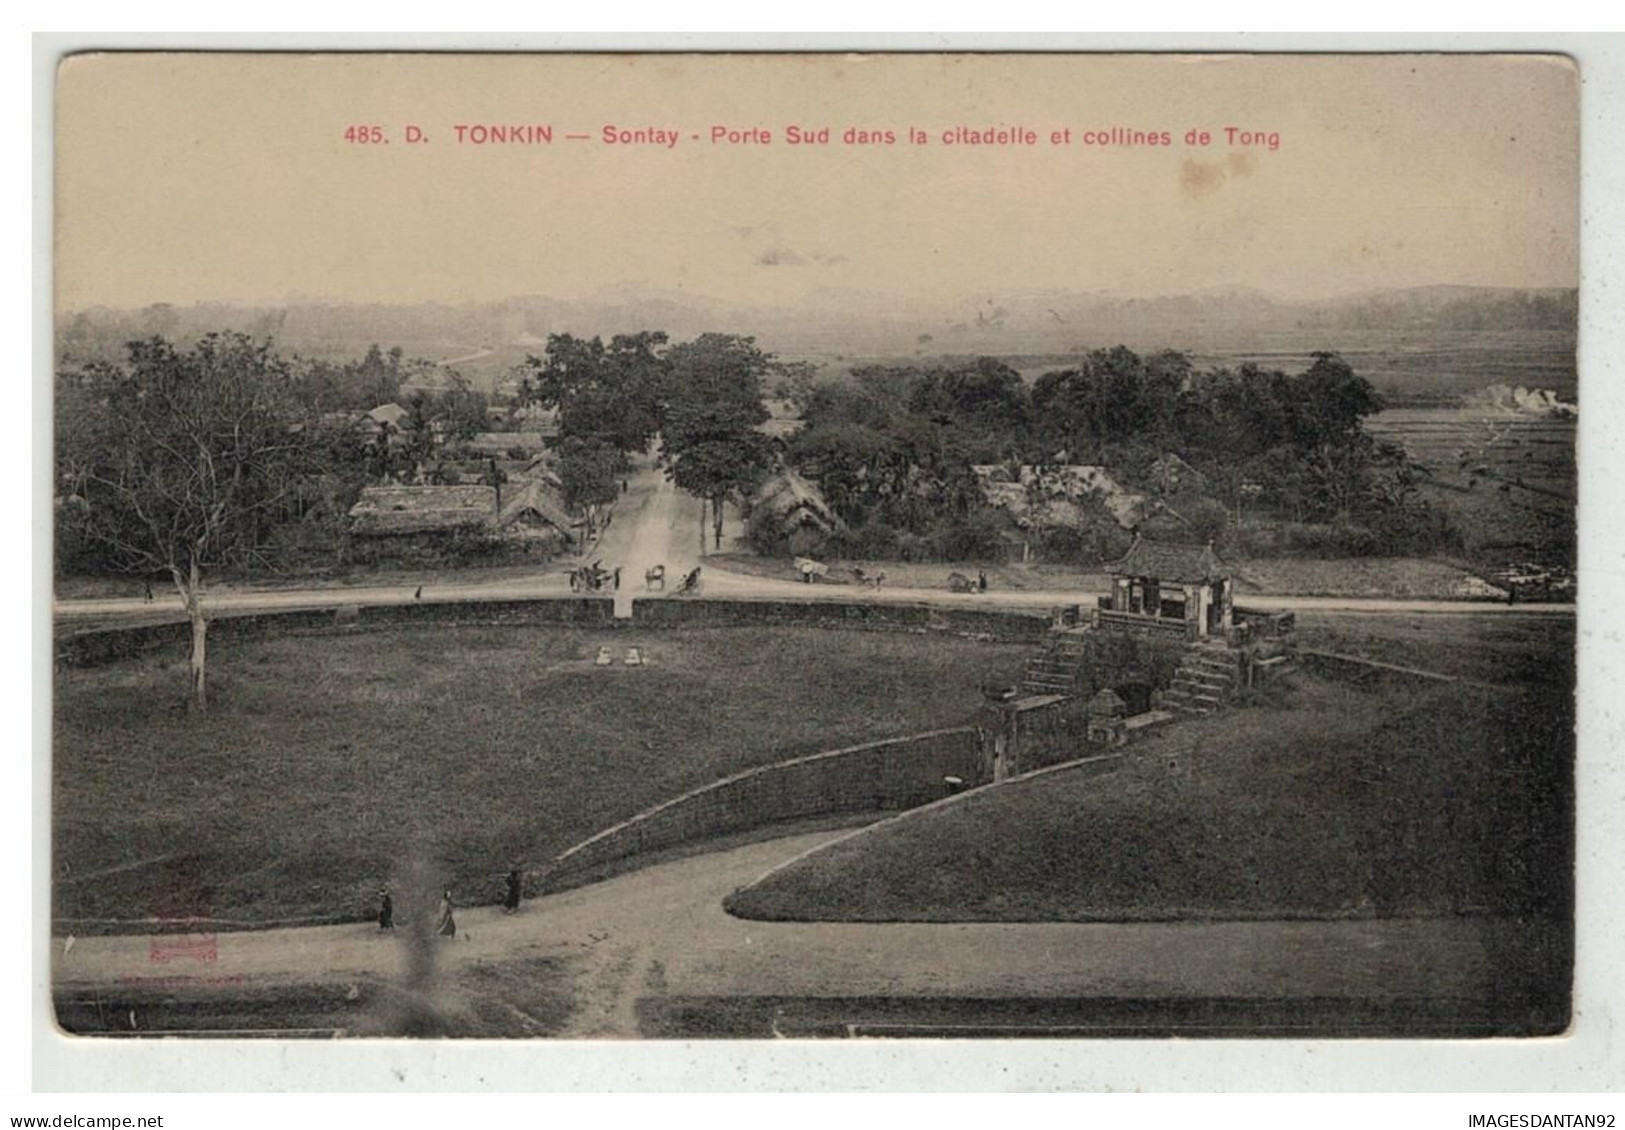 TONKIN INDOCHINE VIETNAM SAIGON #18610 SONTAY PORTE SUD DANS LA CITADELLE ET COLLINES DE TONG - Vietnam